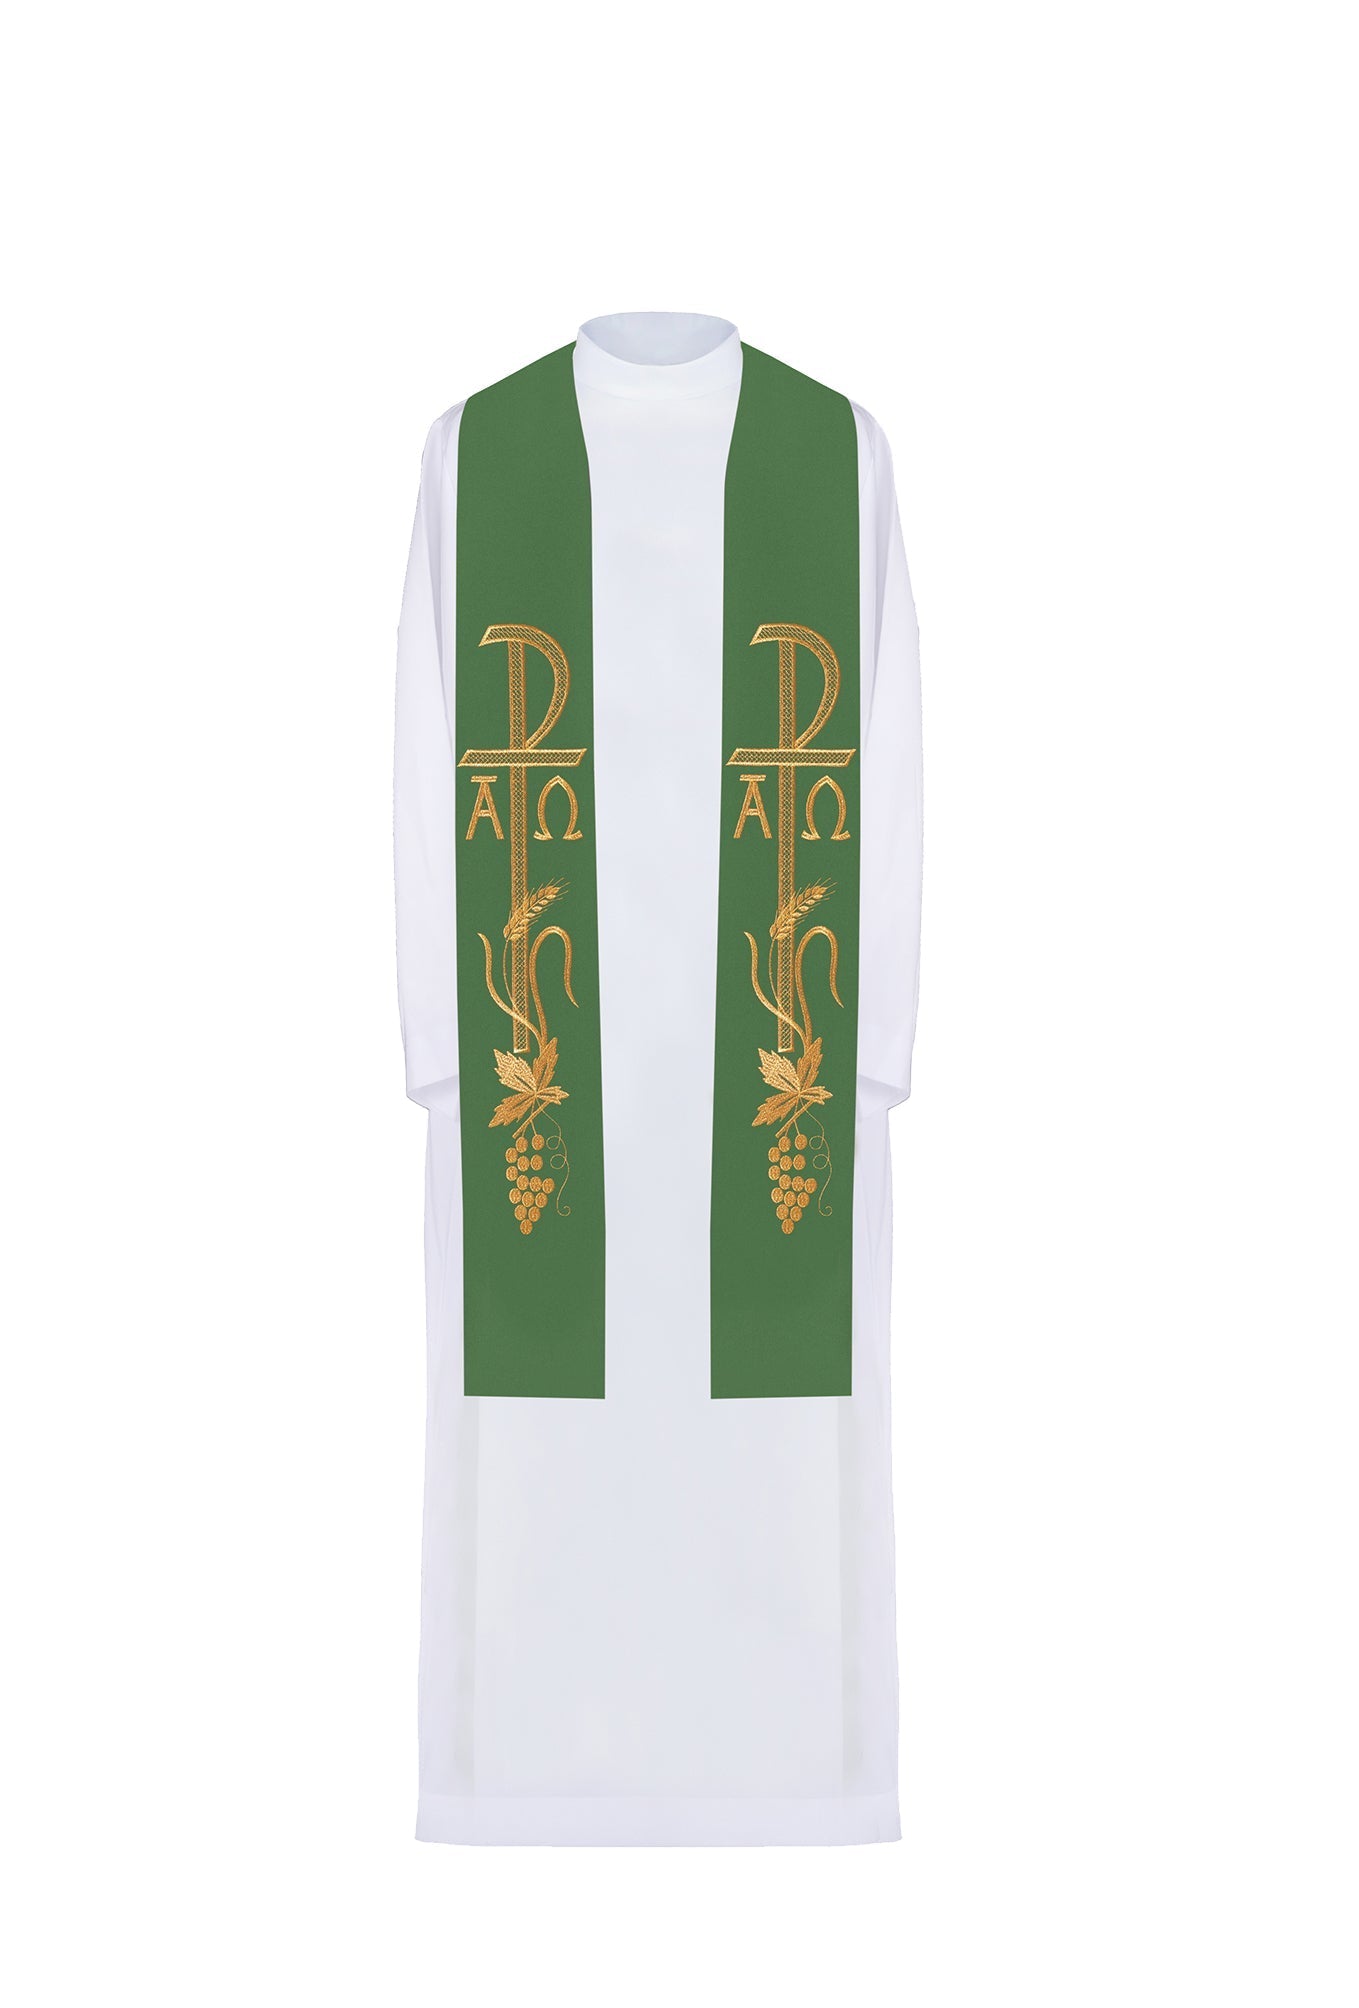 Stuła kapłańska zielona haftowana Alfa i Omega